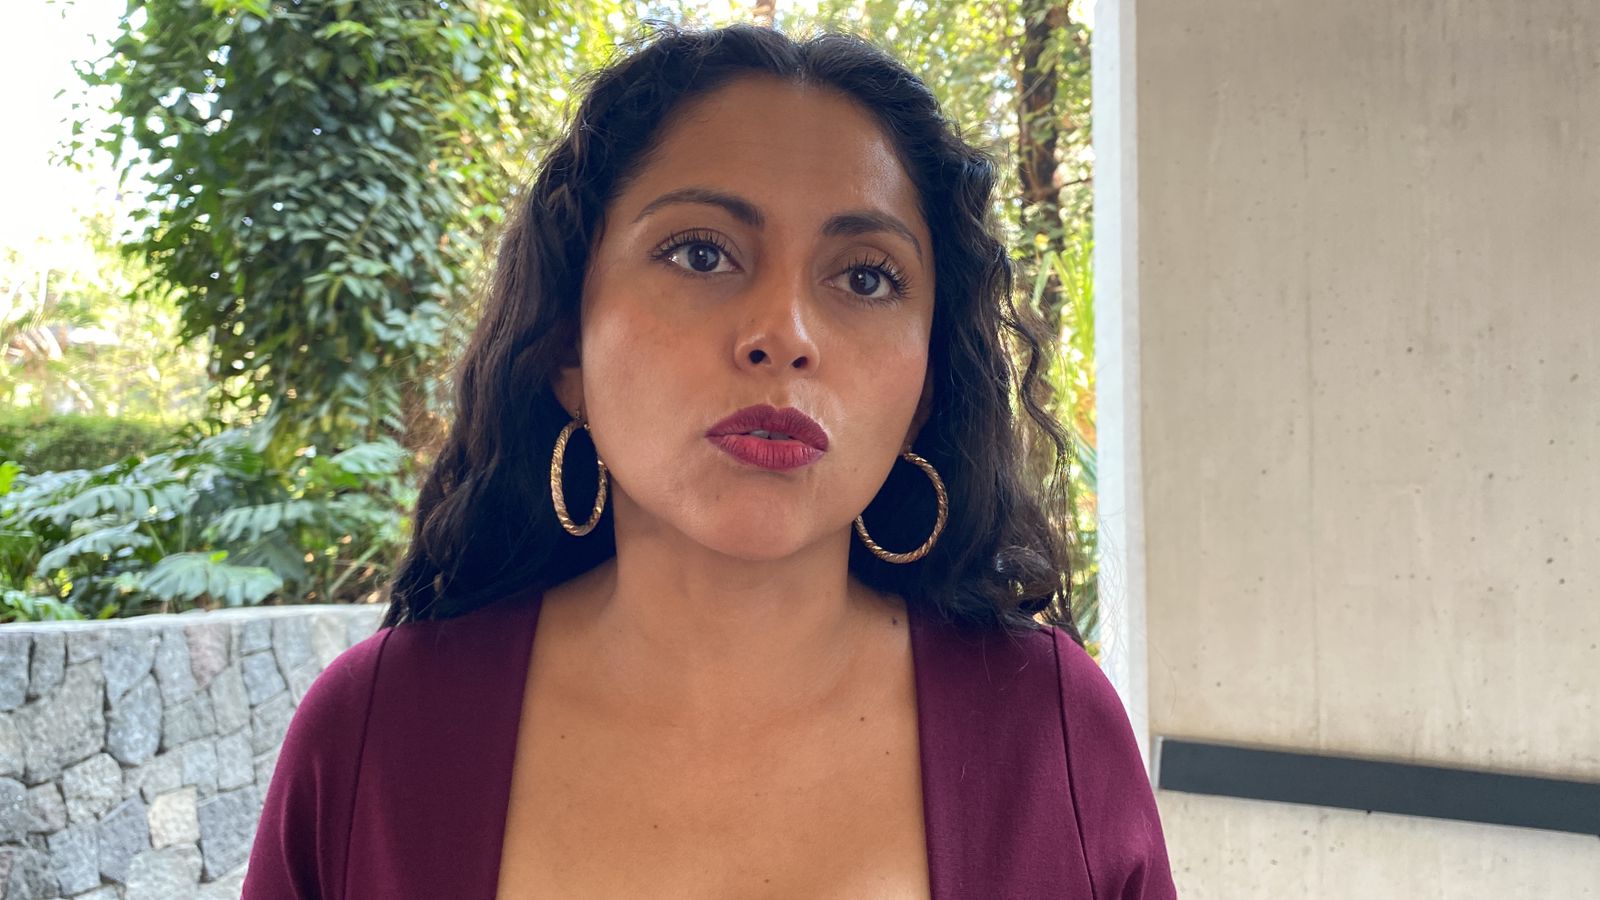 24 Morelos on X: "TODAS MERECEN SER BUSCADAS Andrea Acevedo, vocera del  colectivo feminista Divulvadoras en Morelos, lamentó que se siga presentado  violencia en contra de la mujer. Por lo anterior, pidió